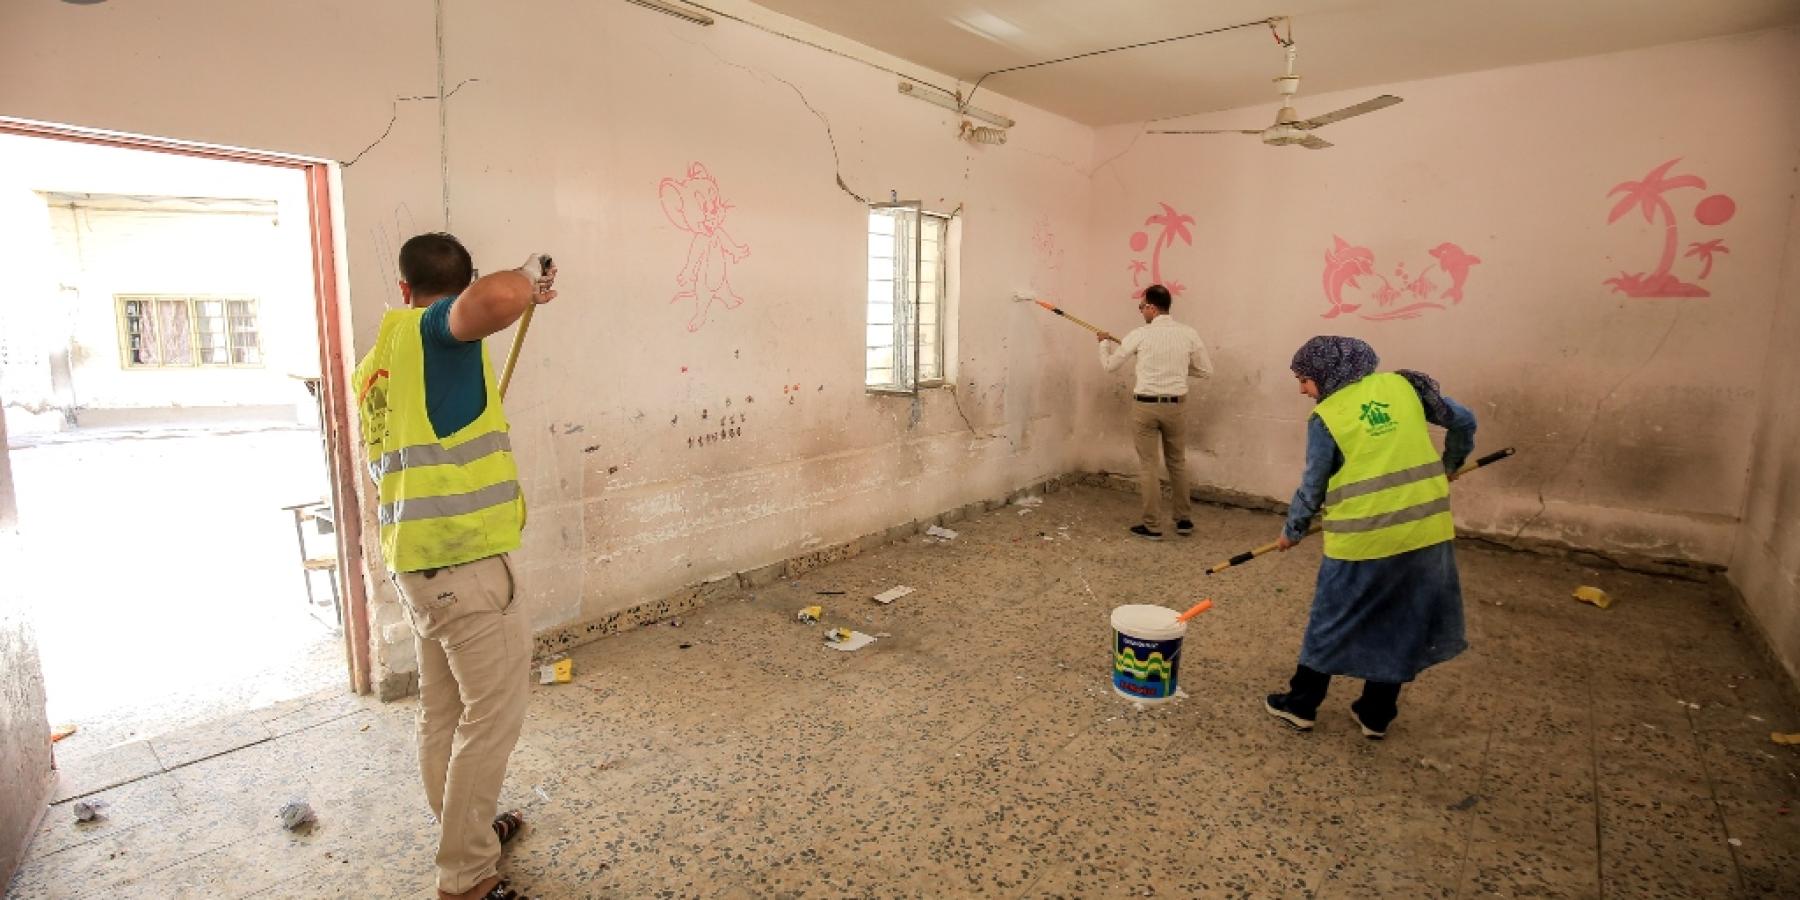 شعبة المتطوعين في العتبة العلوية تقدم الدعم اللوجستي لترميم إحدى المدارس بالمدينة القديمة في النجف الأشرف